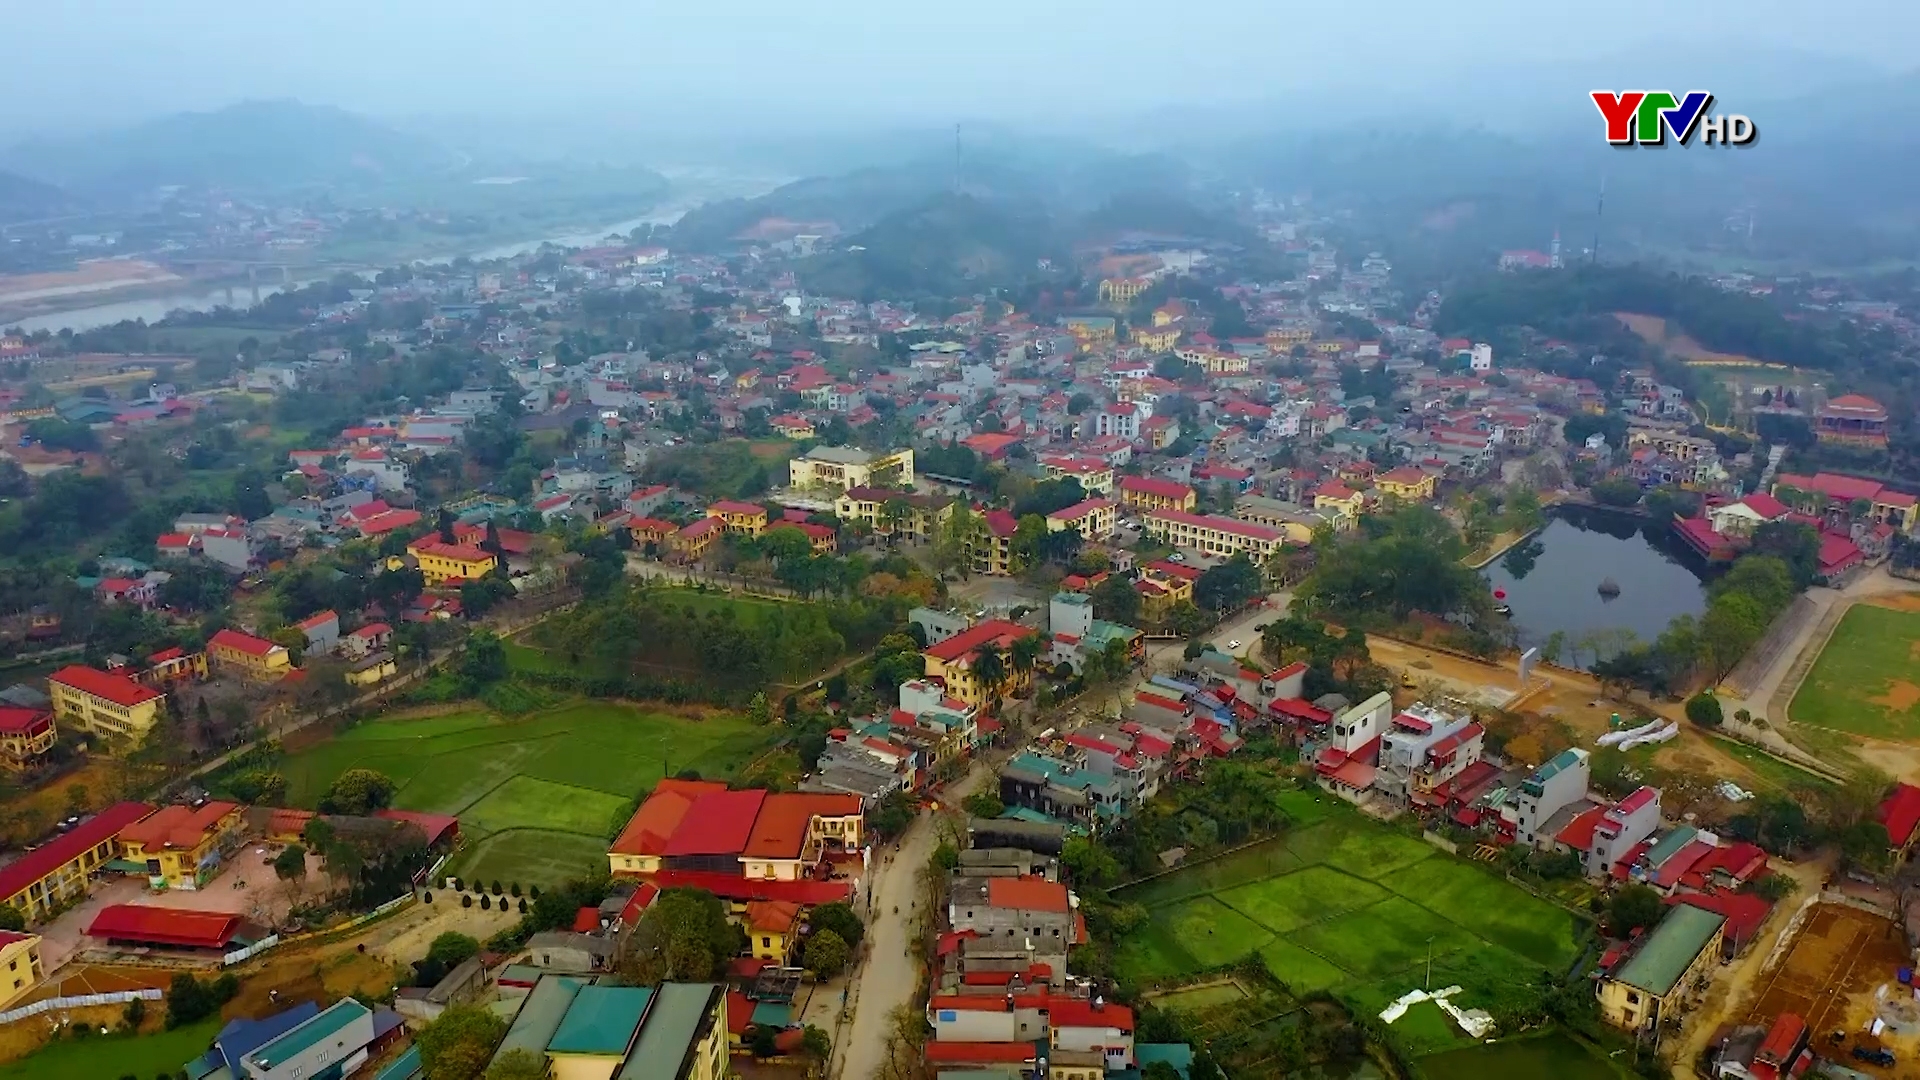 Huyện Văn Yên phát huy tinh thần Cách mạng tháng Tám trong xây dựng quê hương